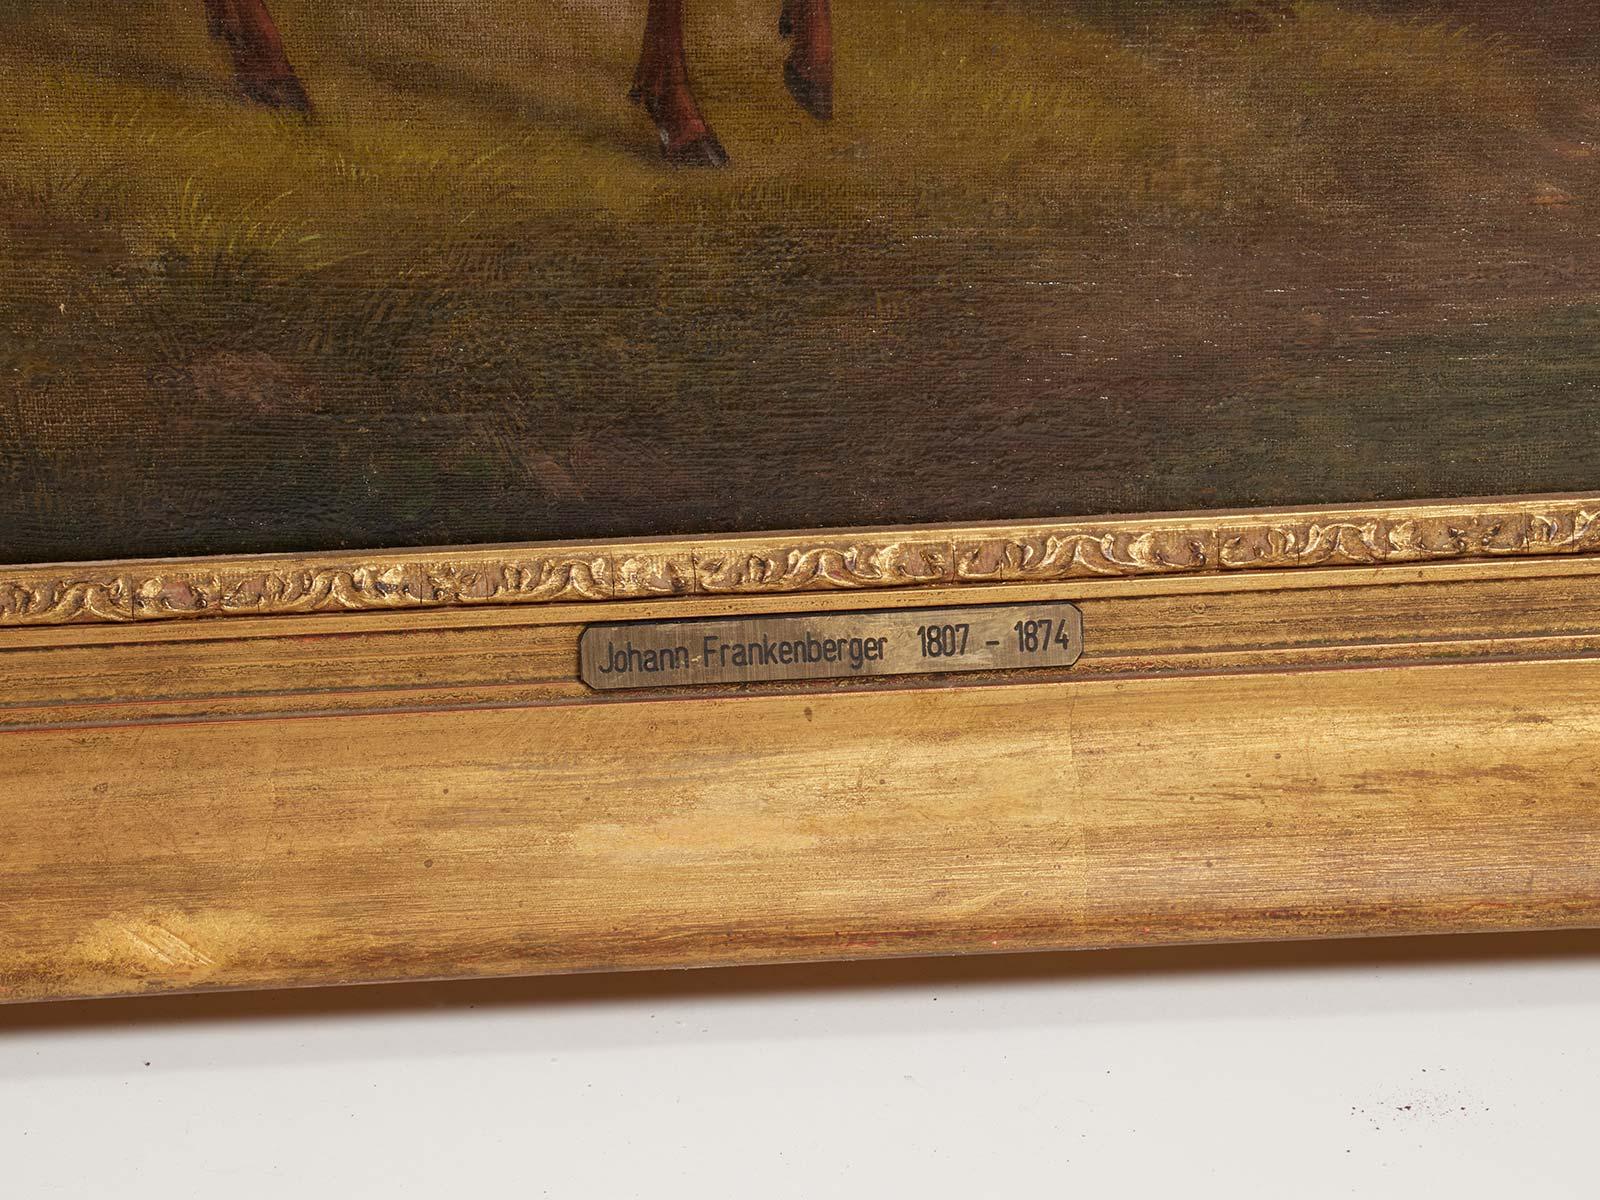 Gemälde in Öl auf Leinwand, das eine Gruppe von Hirschen darstellt. Goldfarbener Rahmen. Unterschrieben: Johann Frankenberger 1807-1874, Deutschland, 1840 ca.